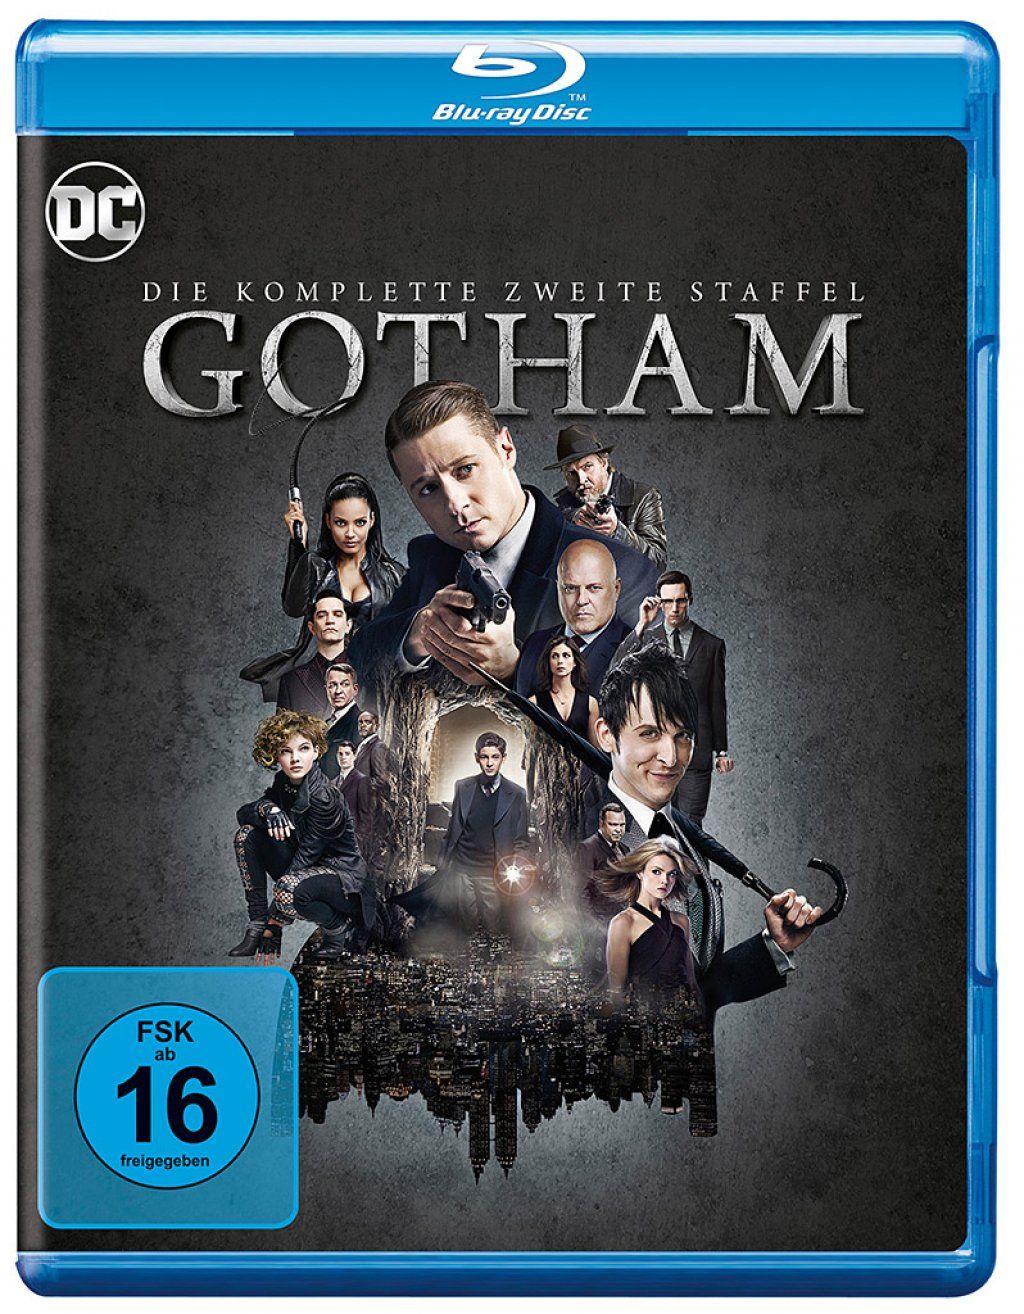 Gotham - Die komplette zweite Staffel (4 Discs) (BLURAY)